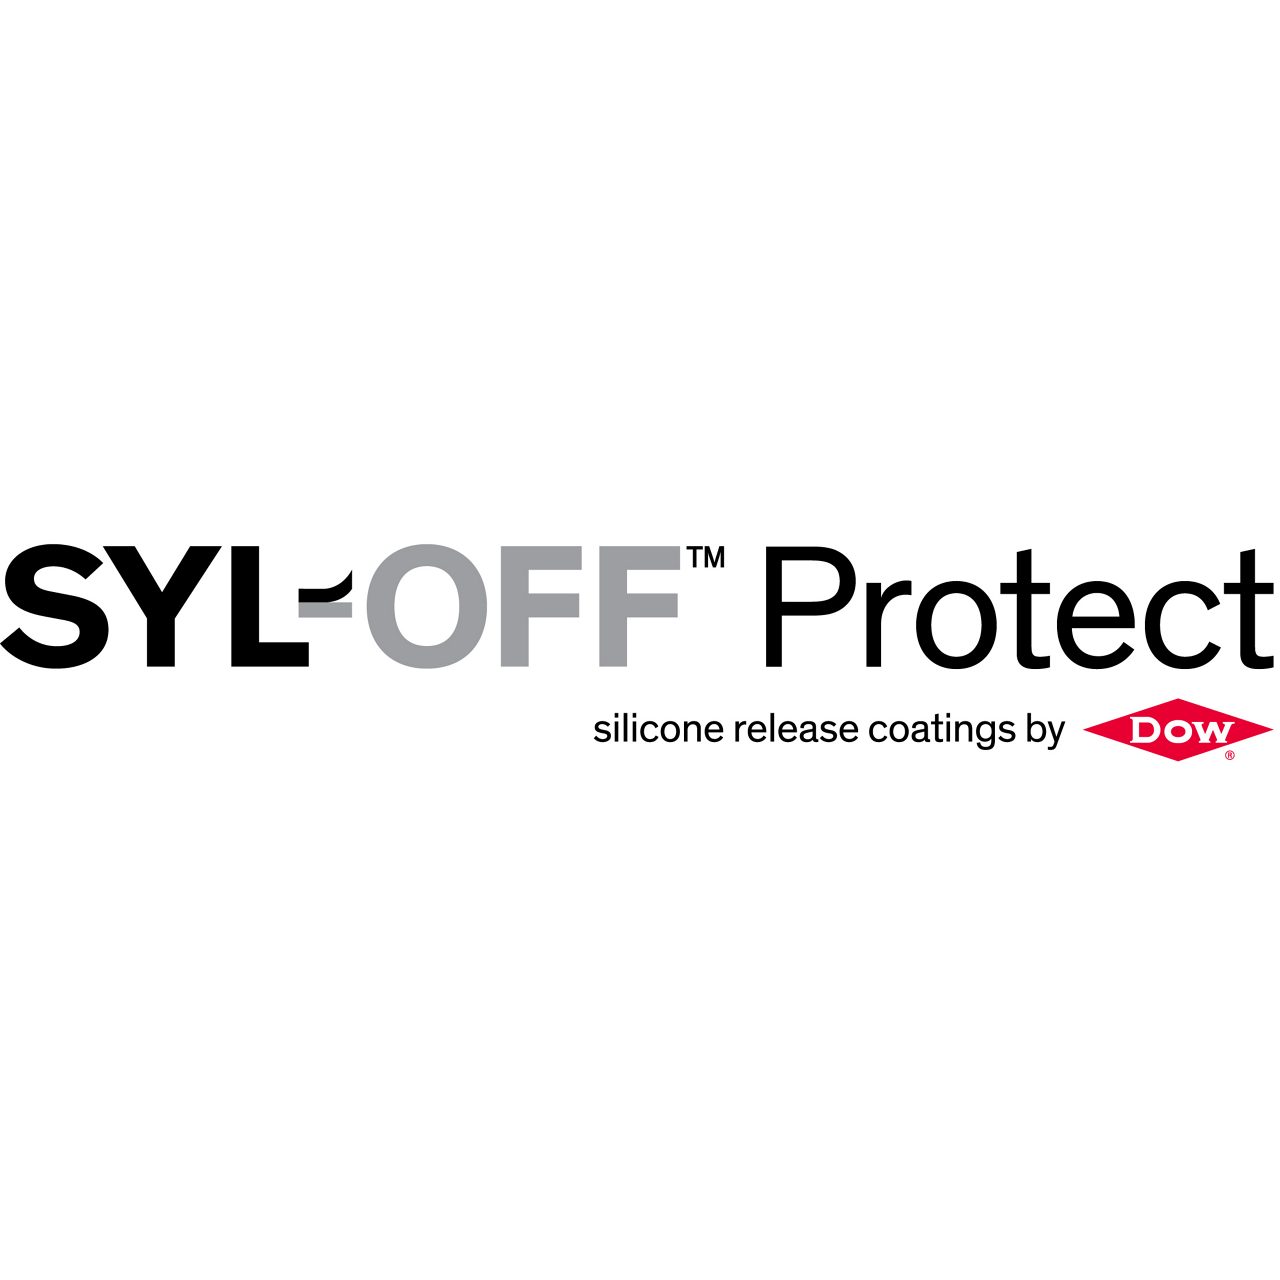 SYL-OFF™ 프로텍트 로고